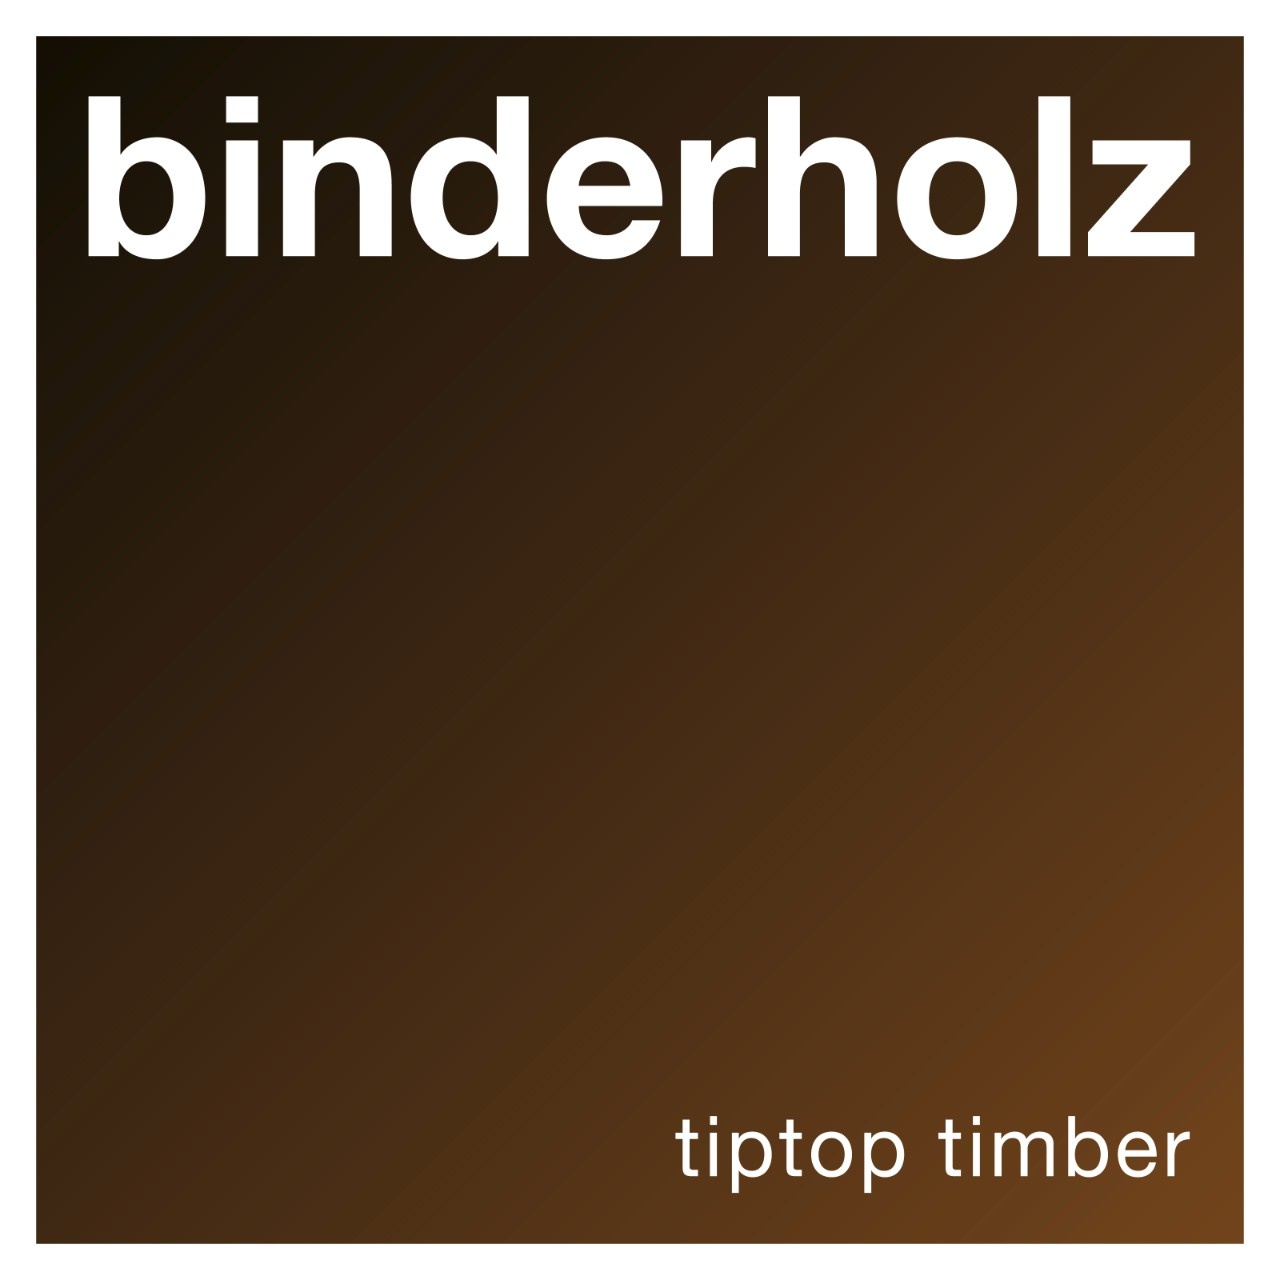 Binderholz acquires Klausner Lumber One